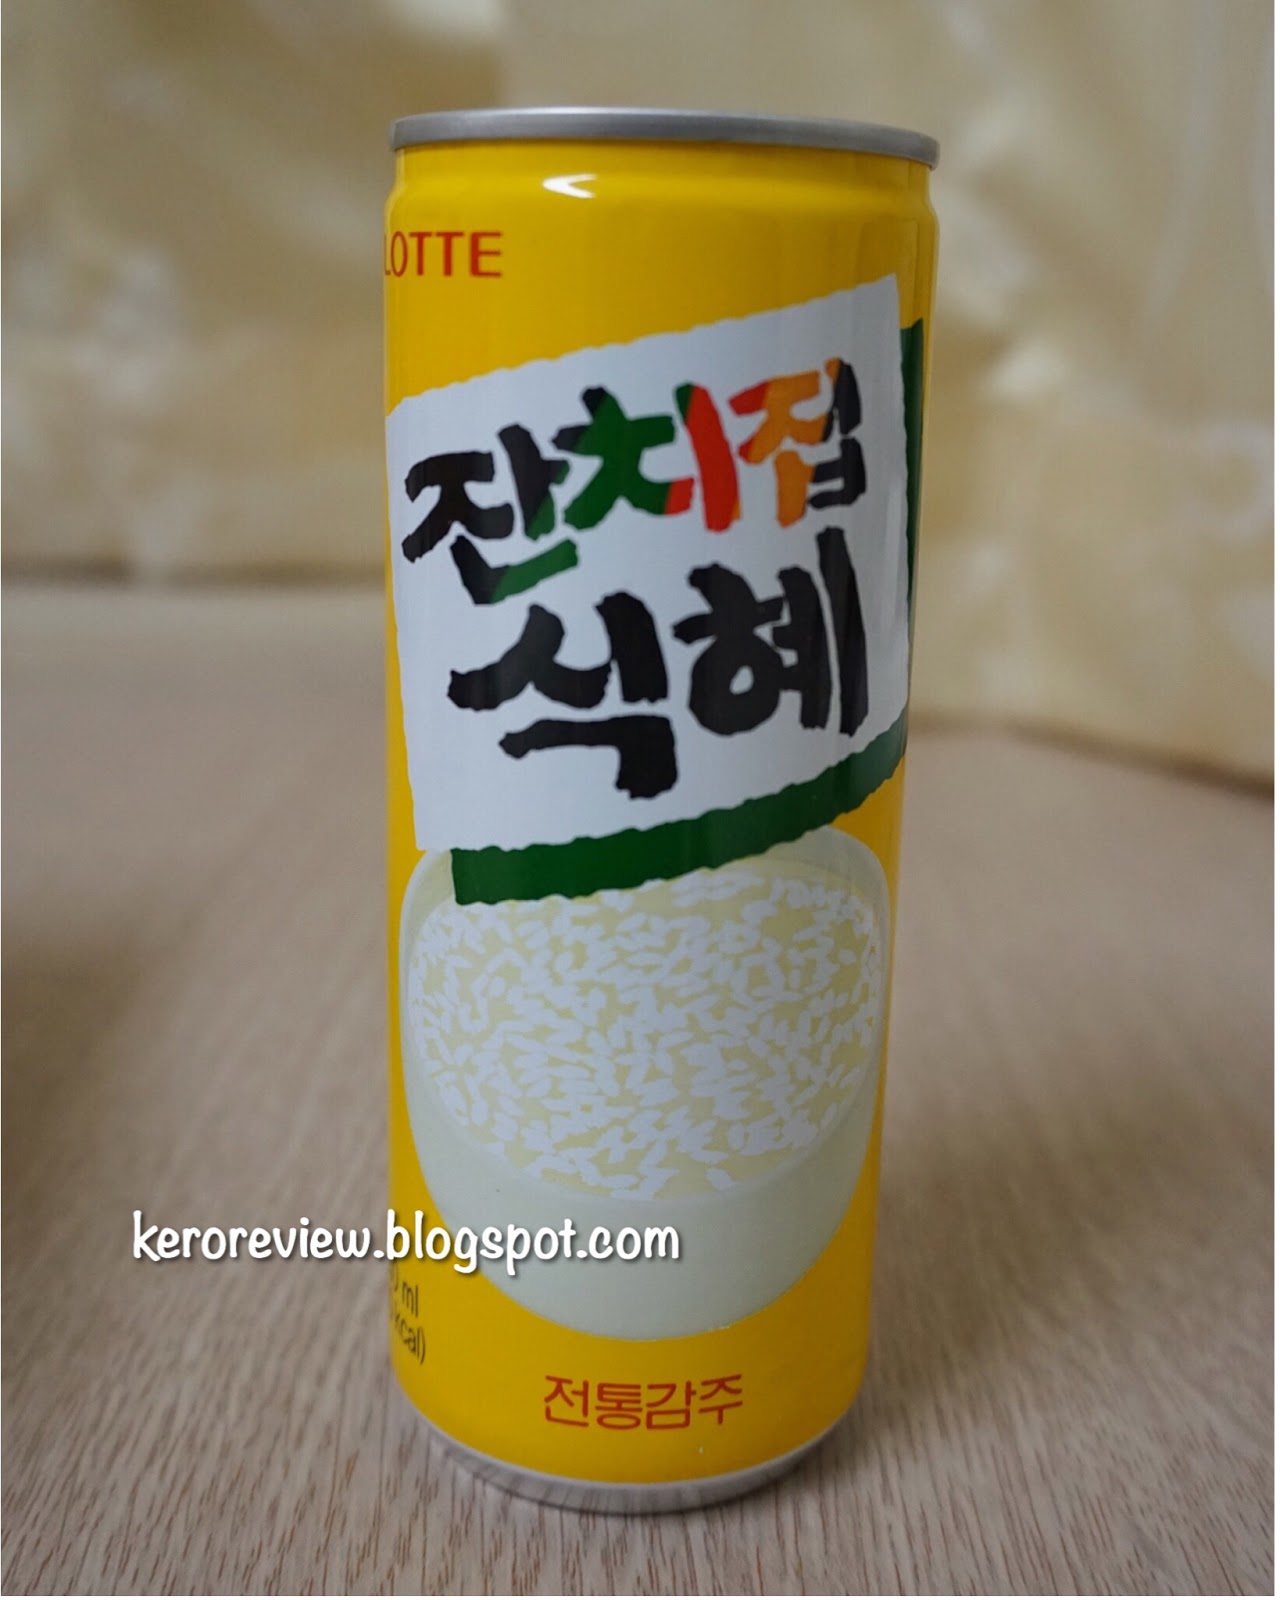 รีวิว ลอตเต้ เครื่องดื่มข้าวจากเกาหลี (CR) Review Lotte Rice Drink from Korea.